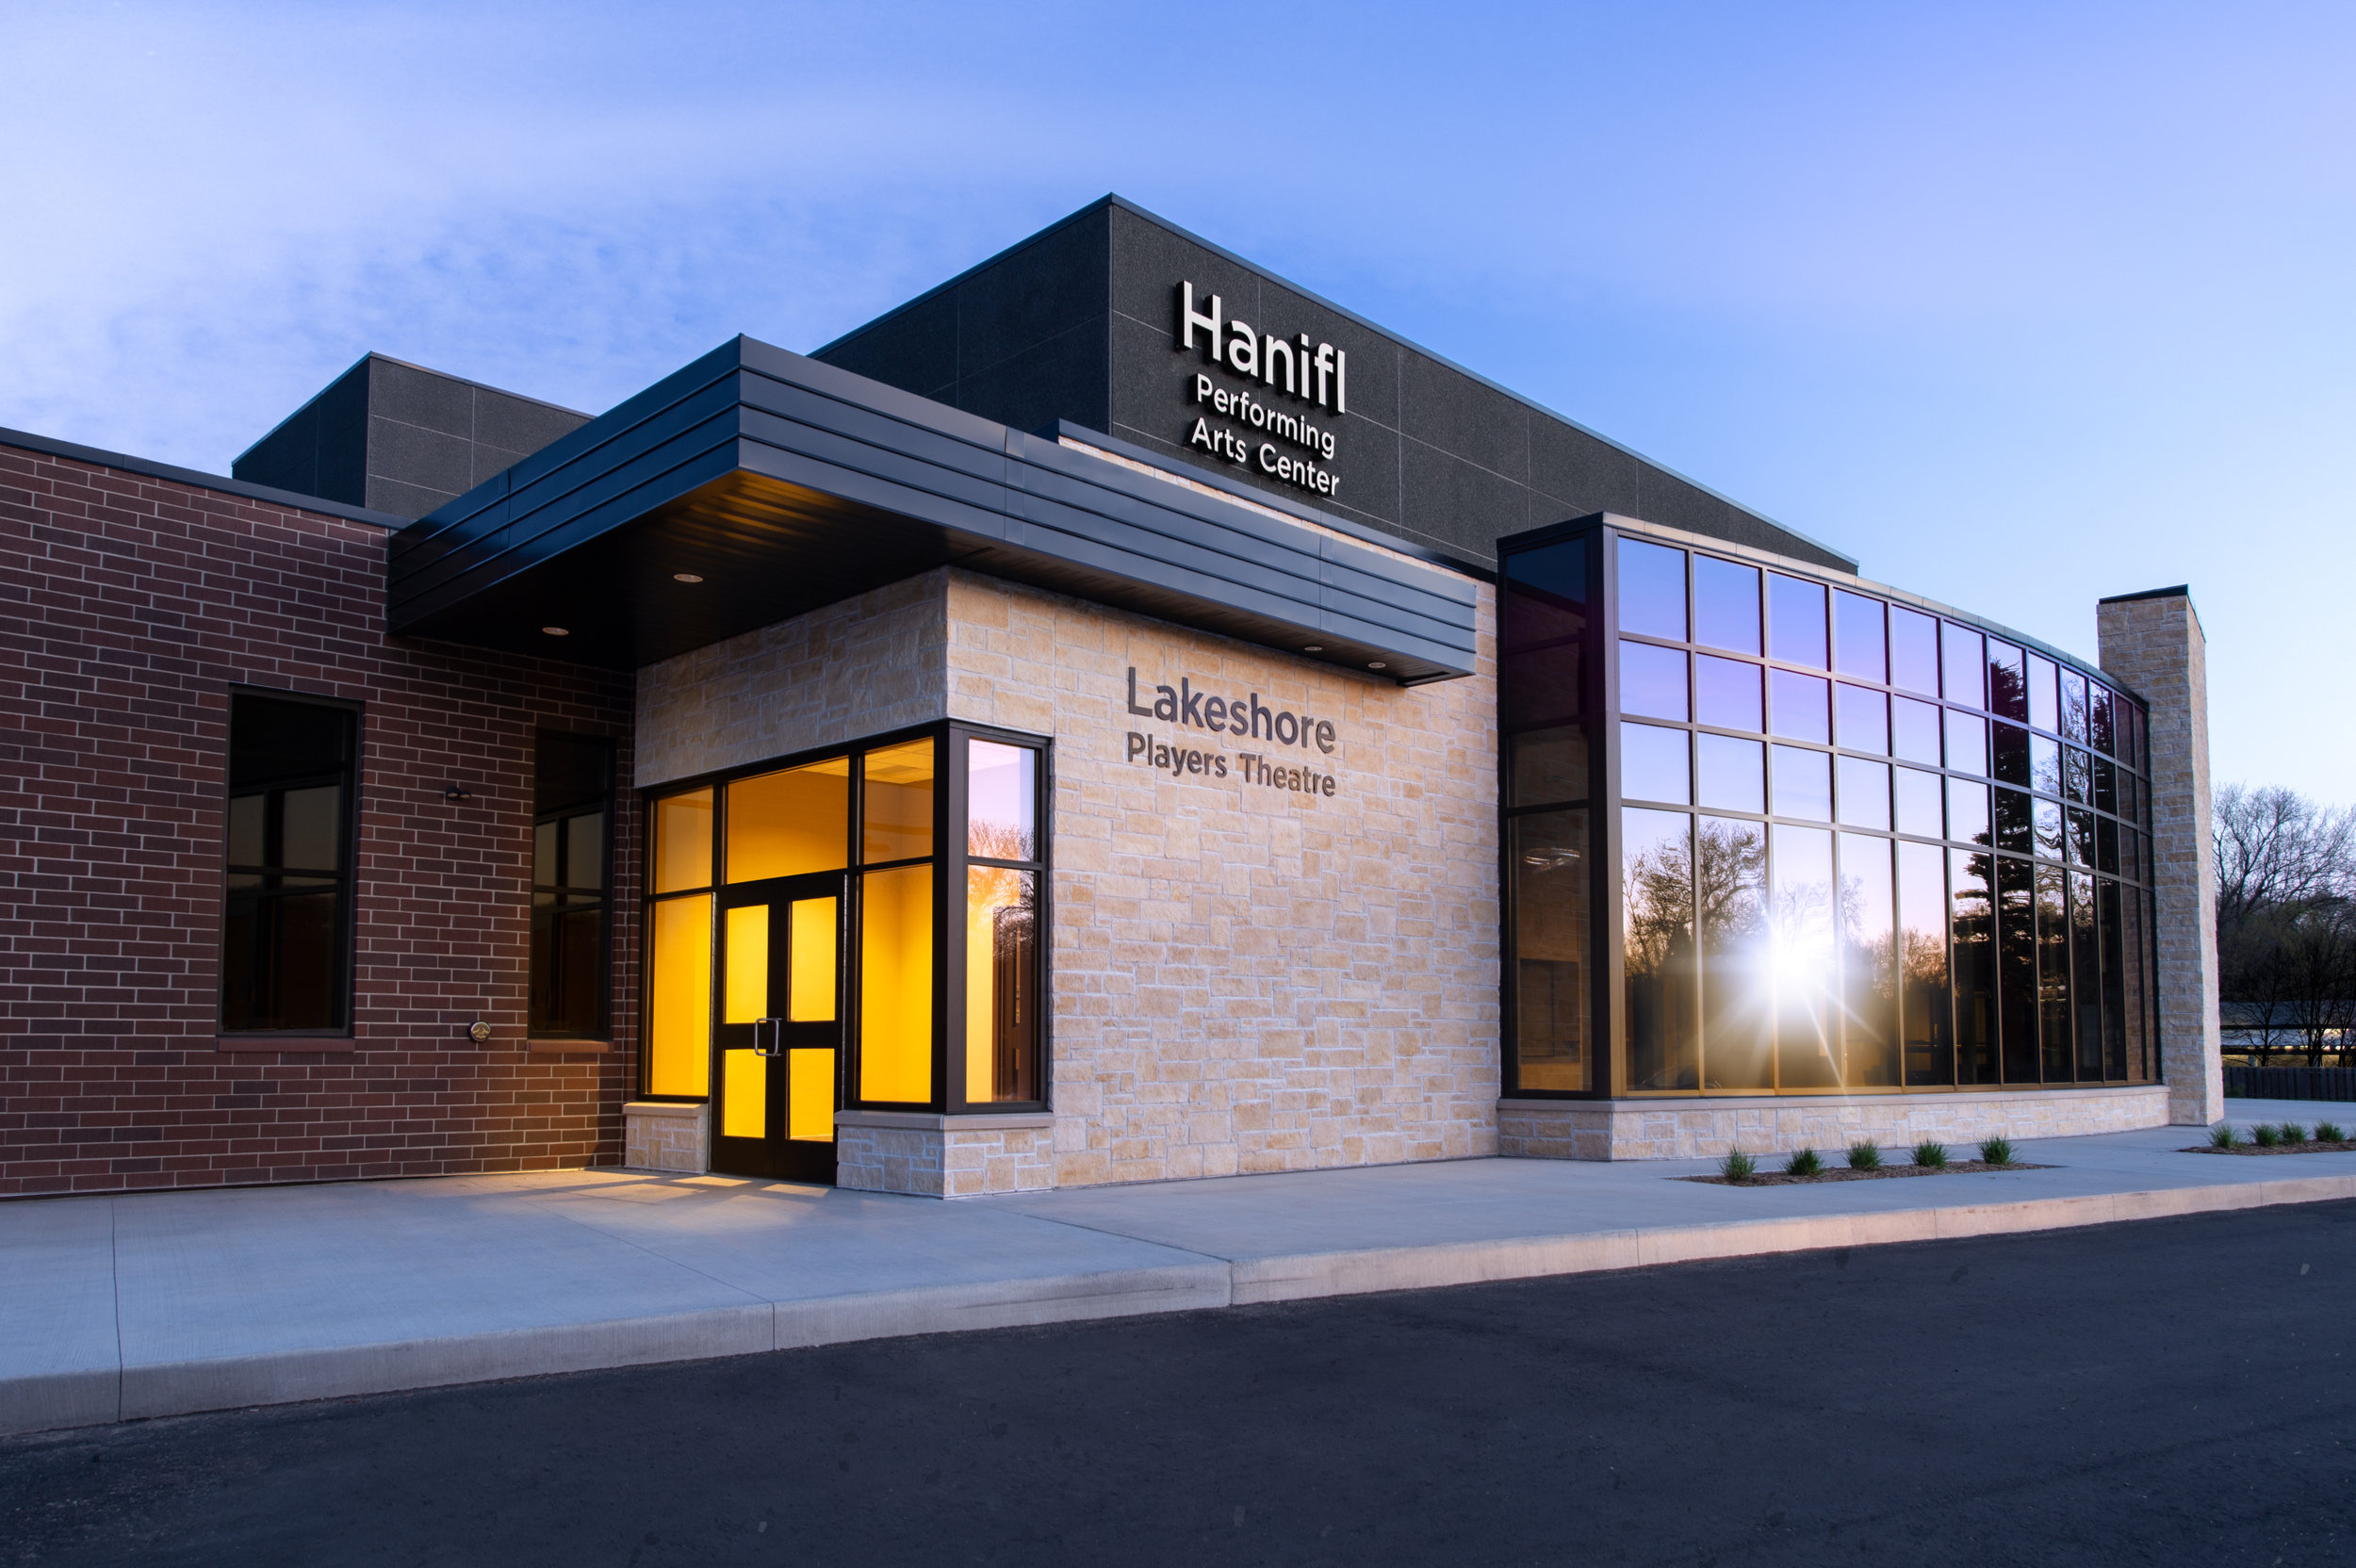 Hanifl Performing Arts Center